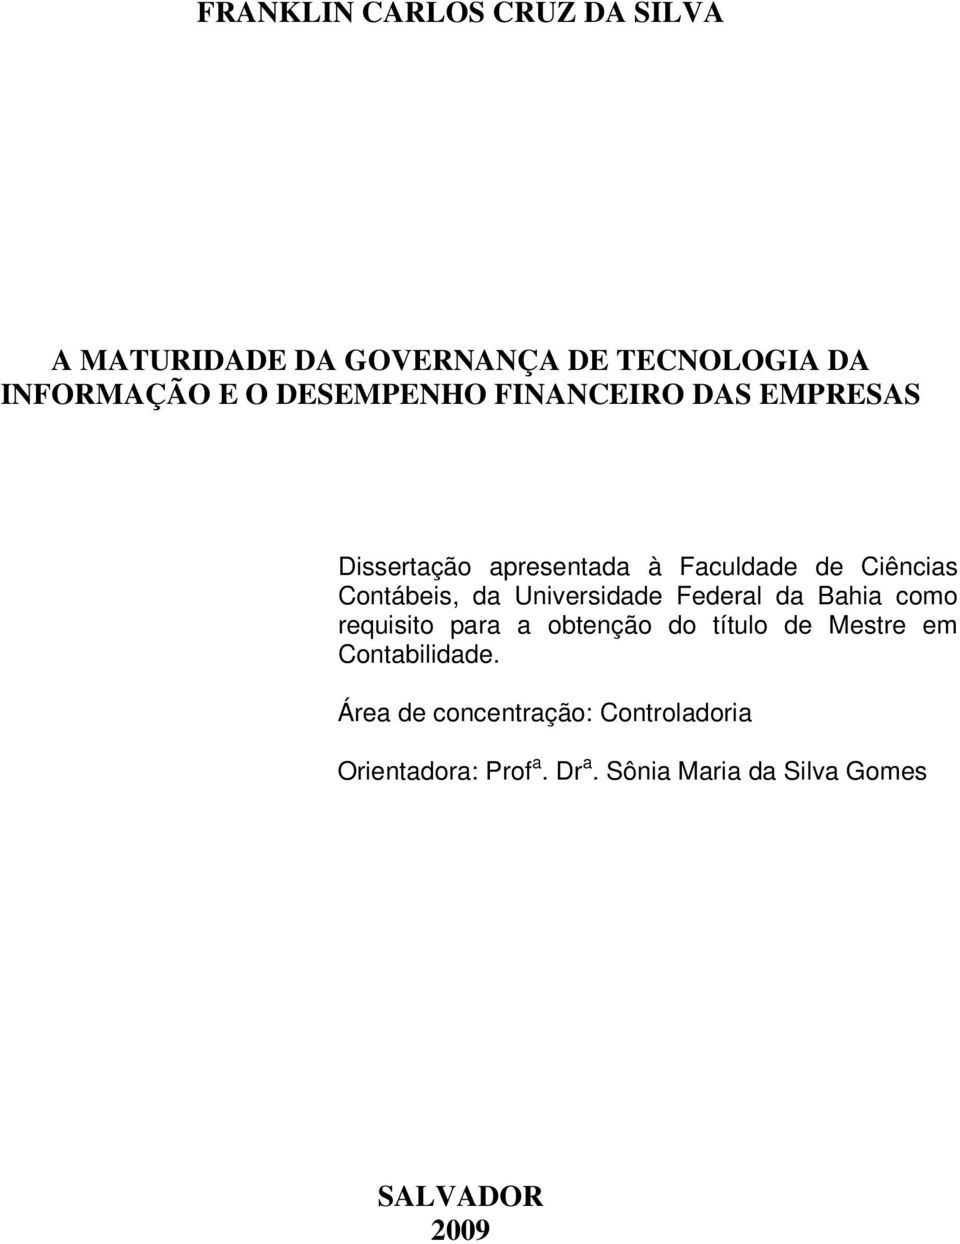 Universidade Federal da Bahia como requisito para a obtenção do título de Mestre em